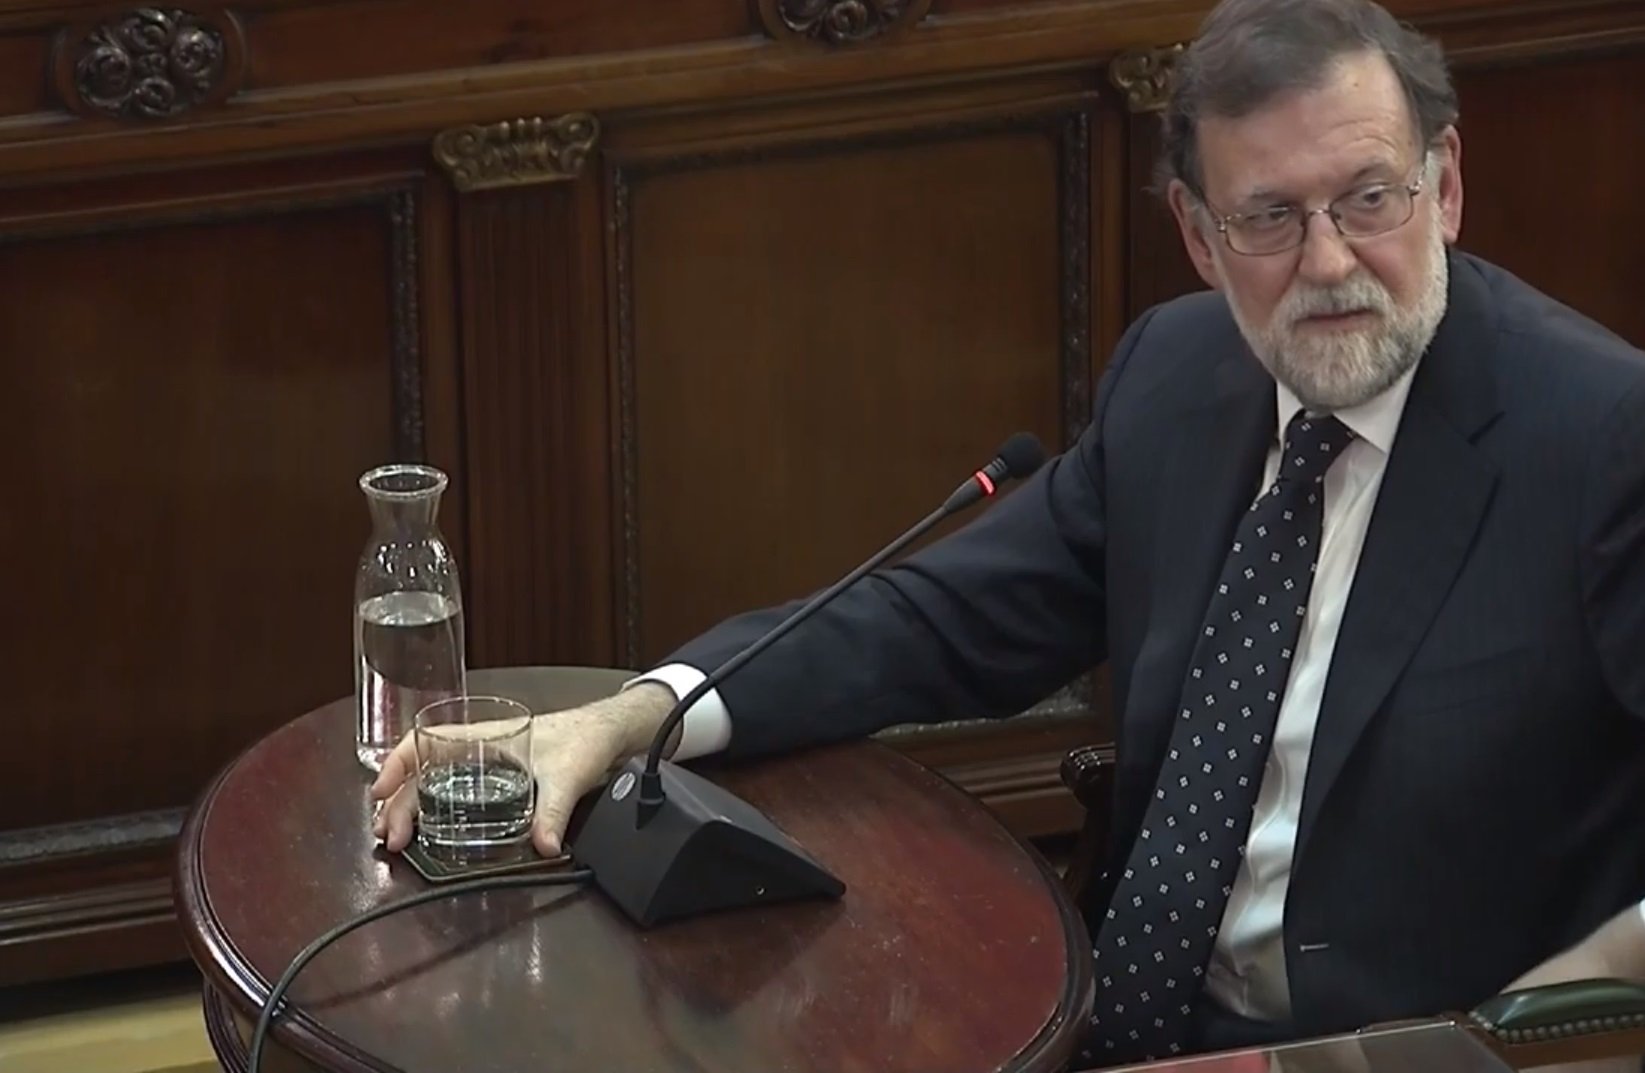 VÍDEO | La declaración completa de Mariano Rajoy